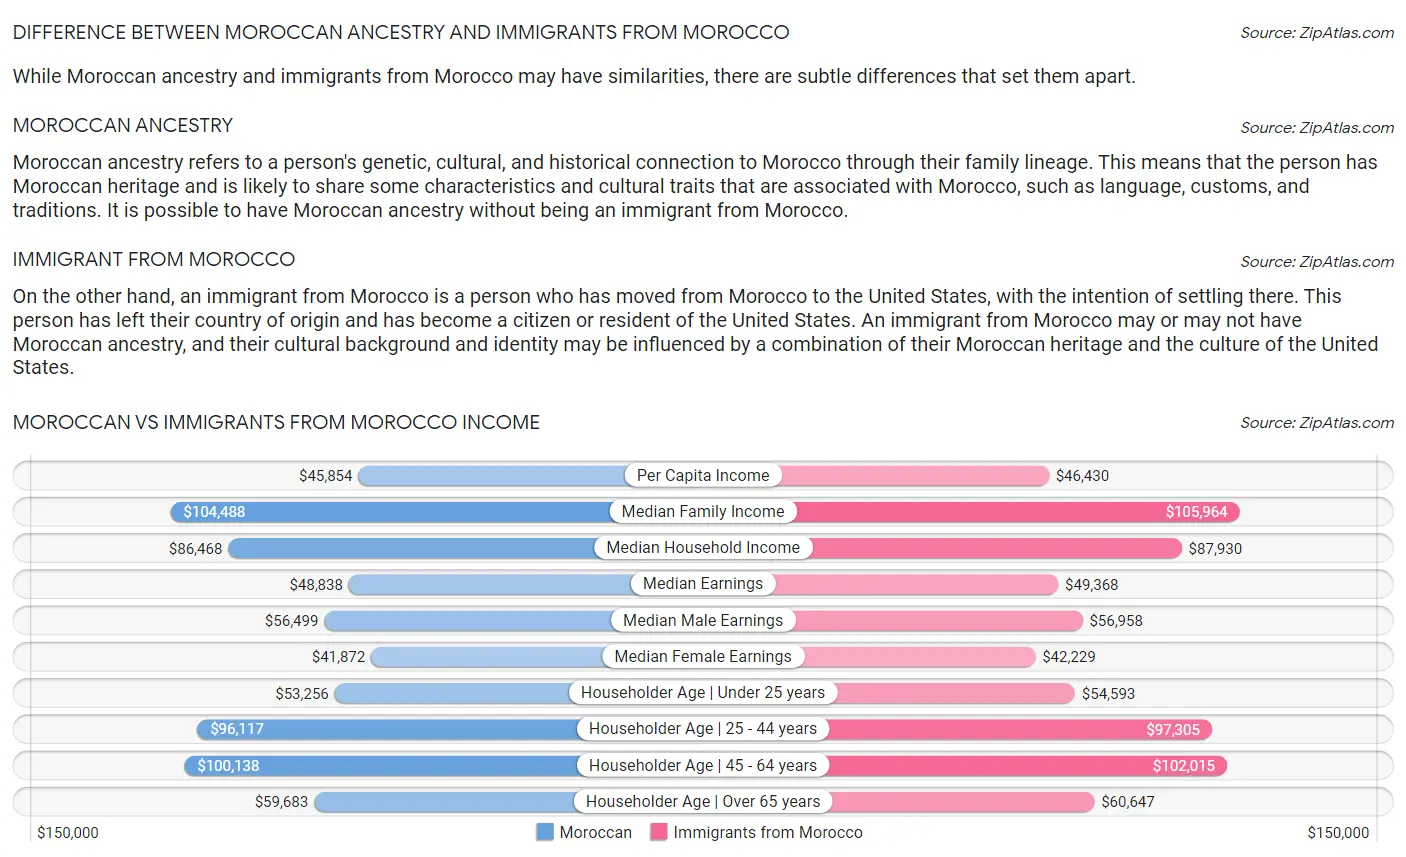 Moroccan vs Immigrants from Morocco Income